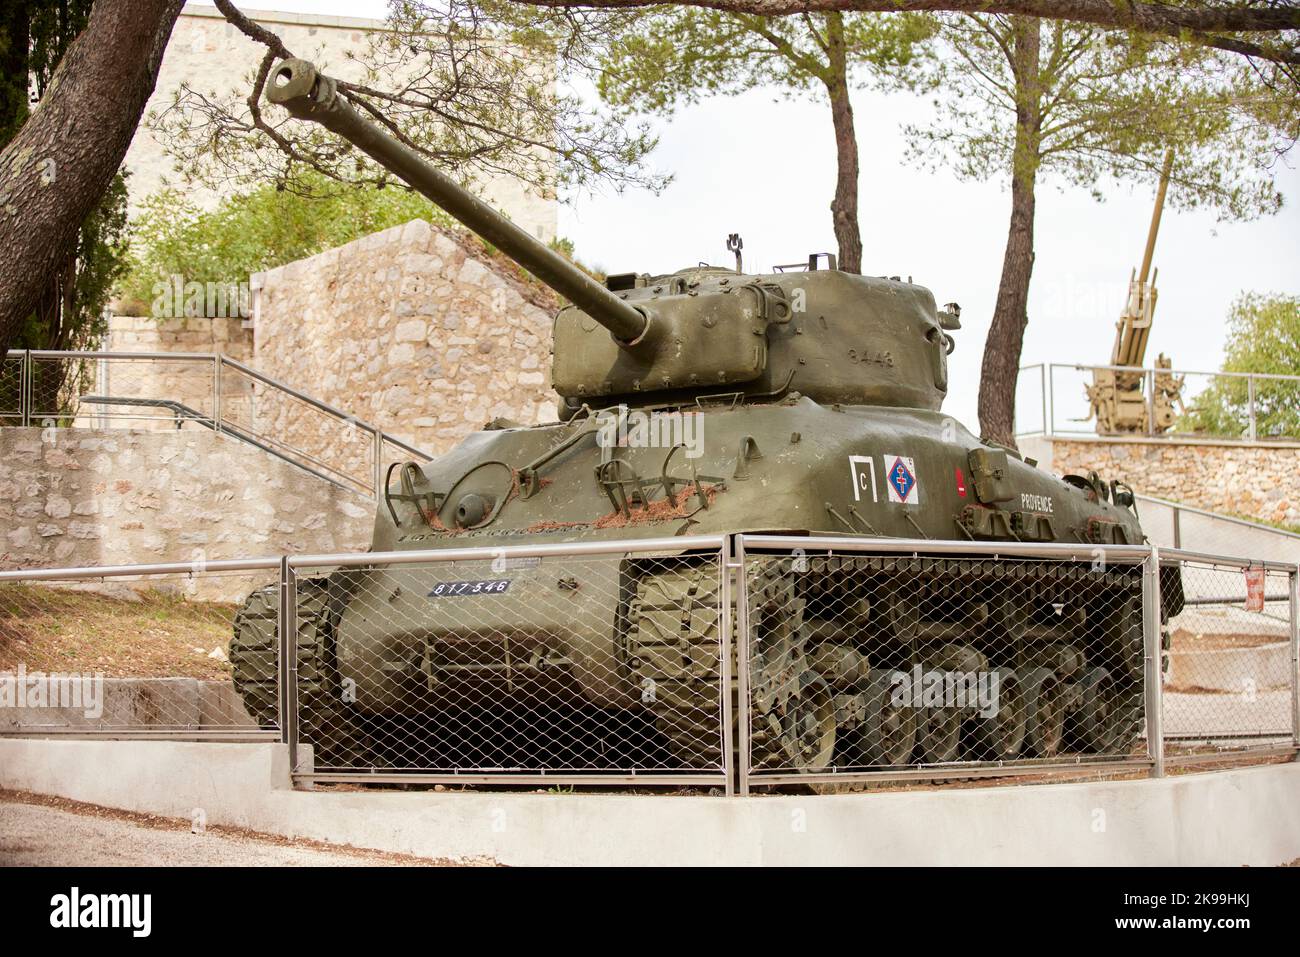 Città portuale di Tolone sulla costa mediterranea della Francia meridionale, serbatoio americano M4A1 Sherman Mont Faron come memoriale della seconda guerra mondiale Foto Stock